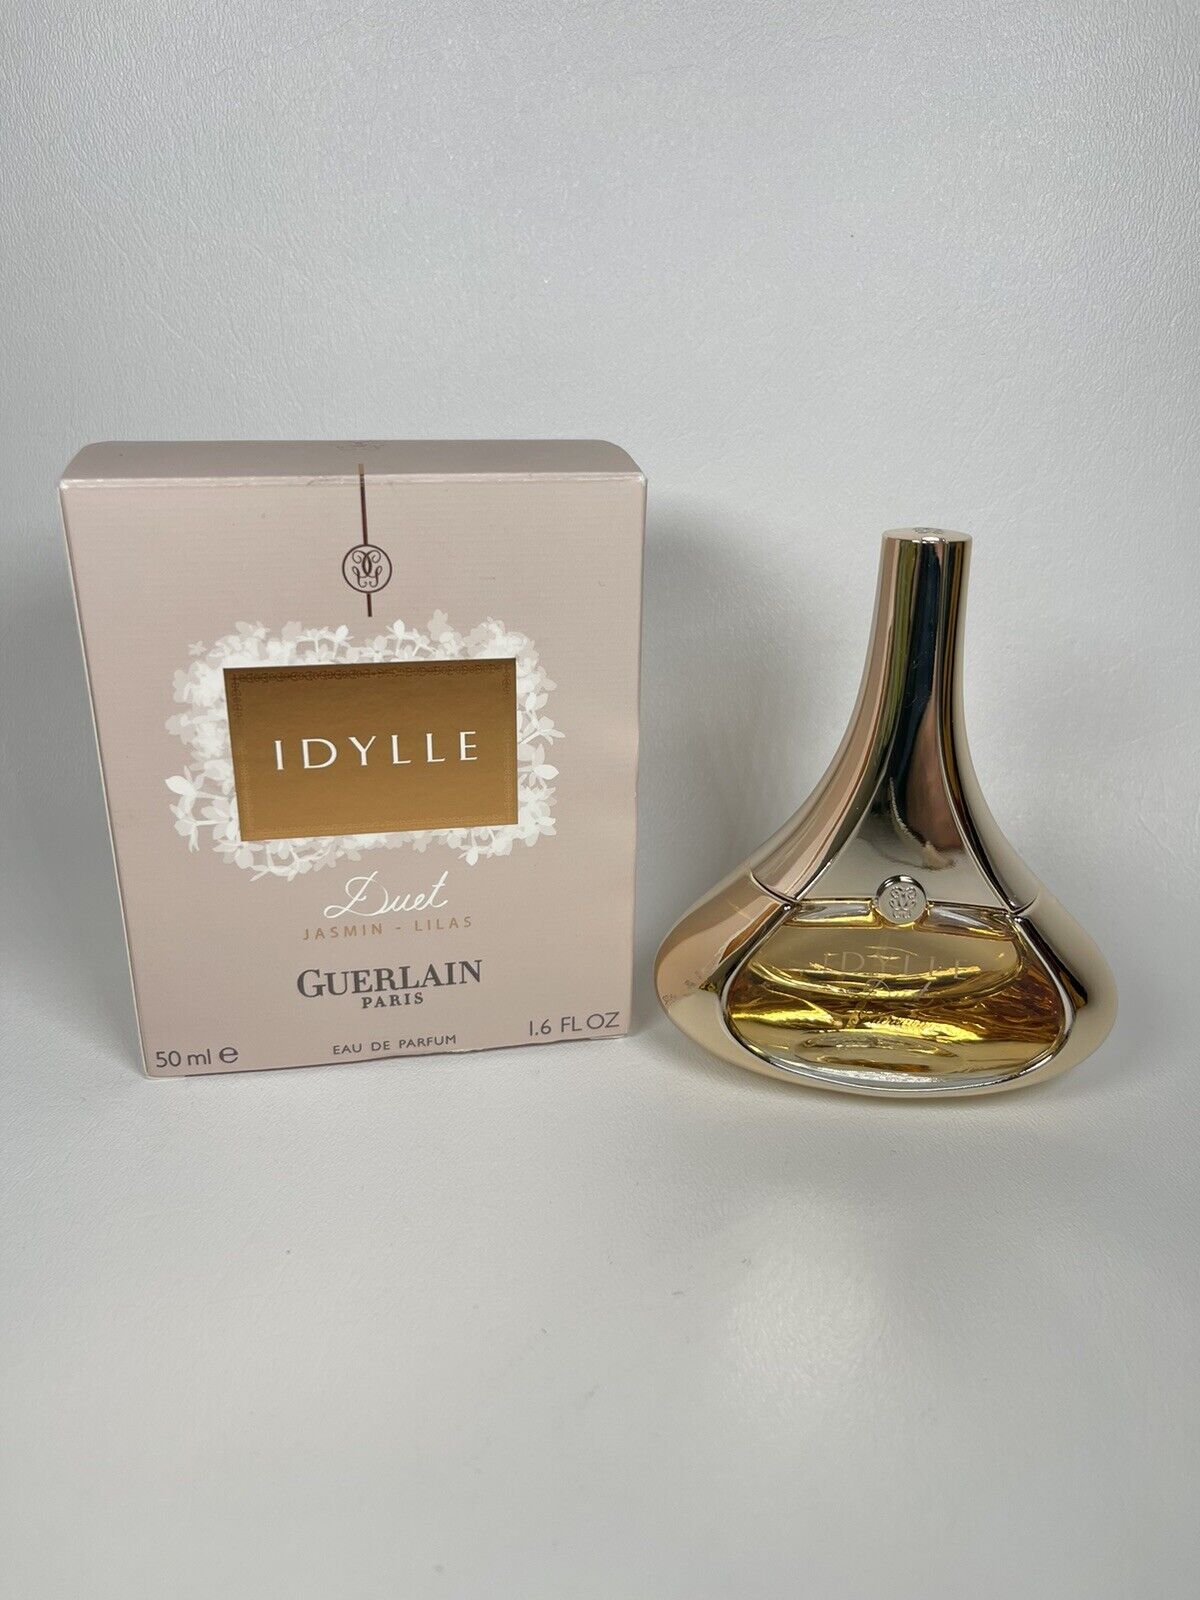 Guerlain Idylle Duet Jasmin - Lilas Eau De Parfum 50ml 1.7 oz Women